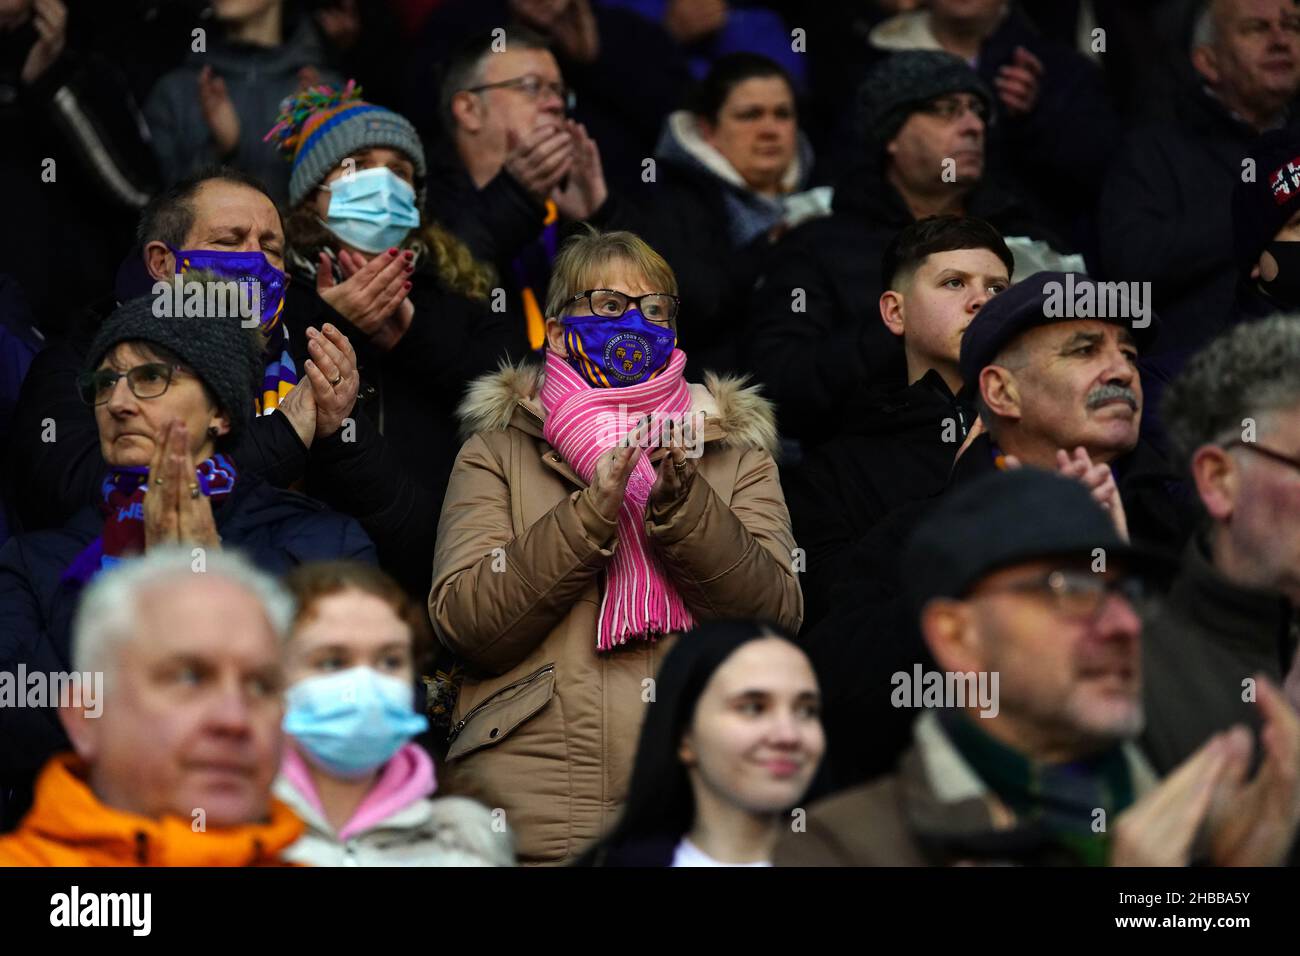 Shrewsbury Town-Fans, die während eines Moments eine Gesichtsmaske trugen, applaudieren in Erinnerung an den ehemaligen Spieler Marvin Morgan während des Sky Bet League One-Spiels auf der Montgomery Waters Meadow in Shrewsbury. Bilddatum: Samstag, 18. Dezember 2021. Stockfoto